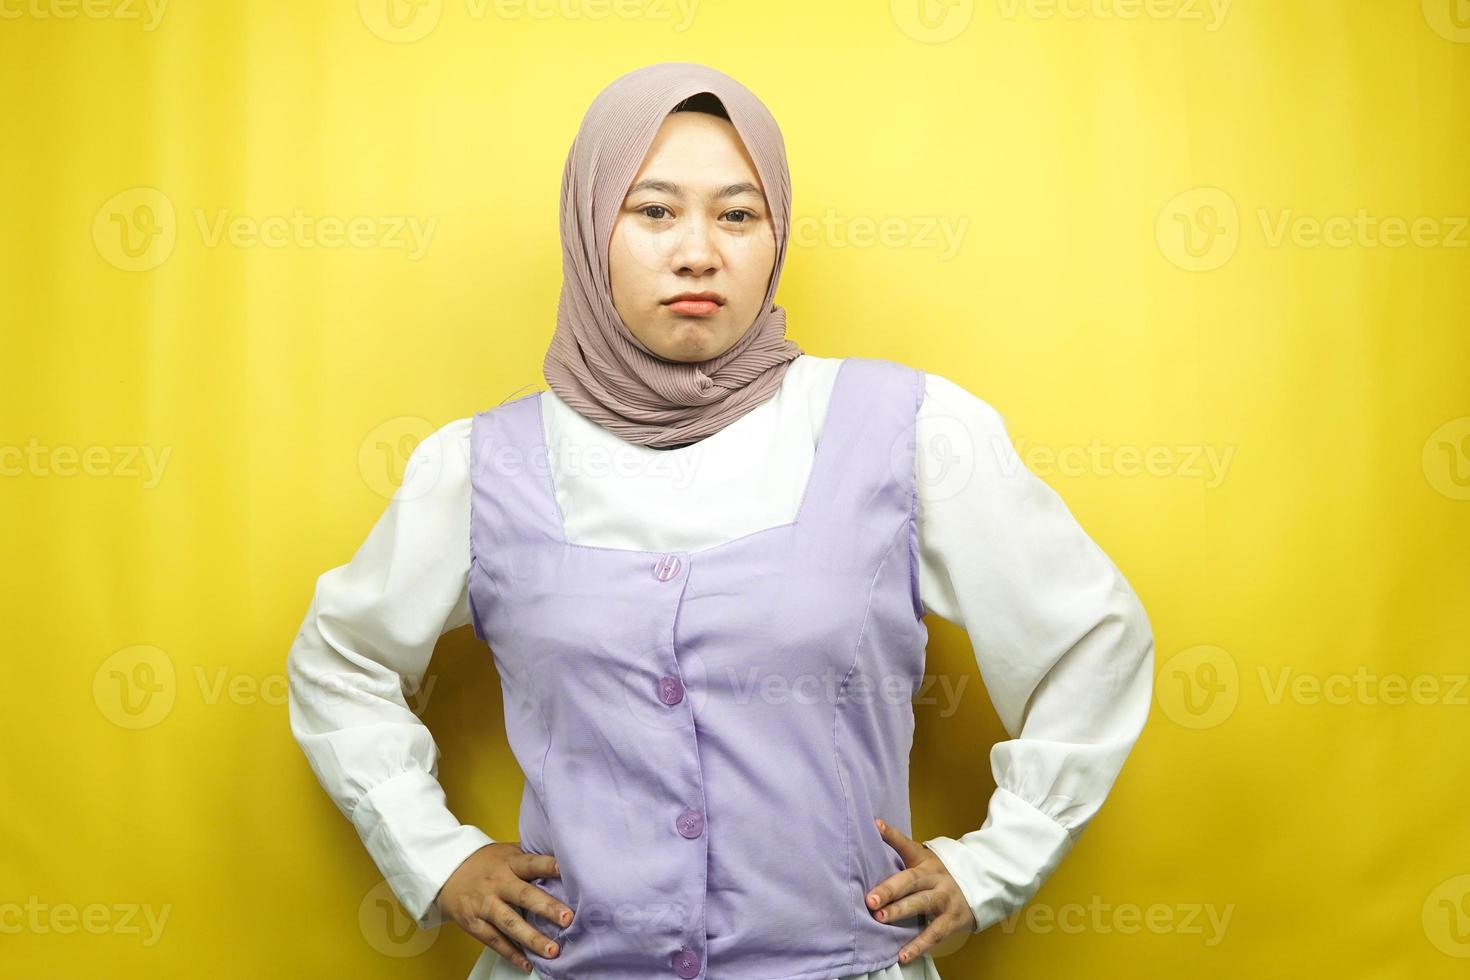 belle jeune femme musulmane asiatique faisant la moue, en colère, se sentant agacée, insatisfaite, mal à l'aise, se sentant intimidée, menti, regardant la caméra isolée sur fond jaune photo